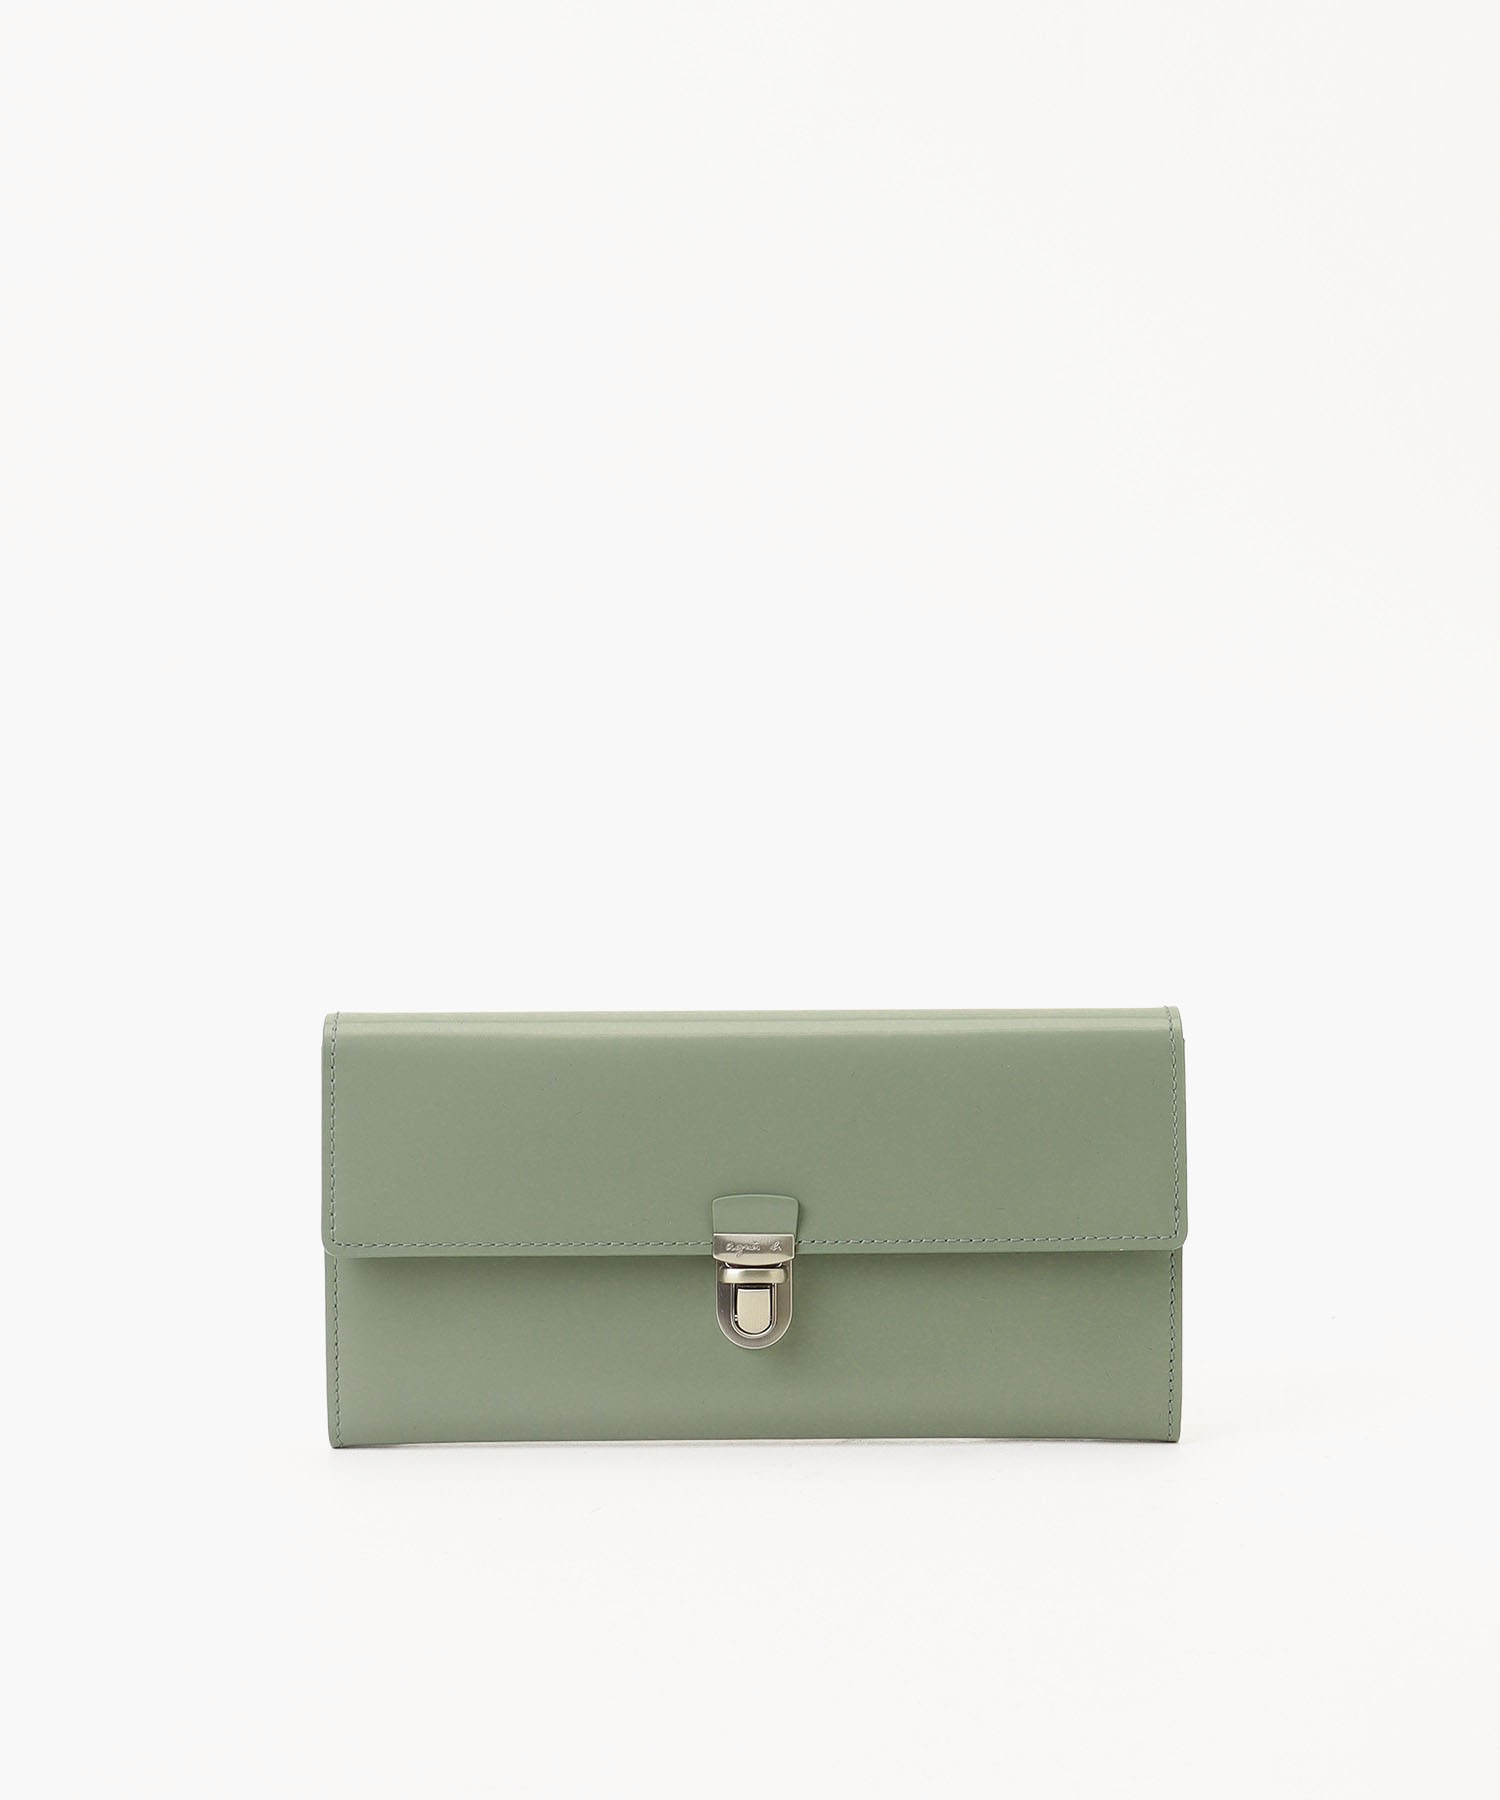 50代女性におすすめの人気ブランド「agnes b.」の財布